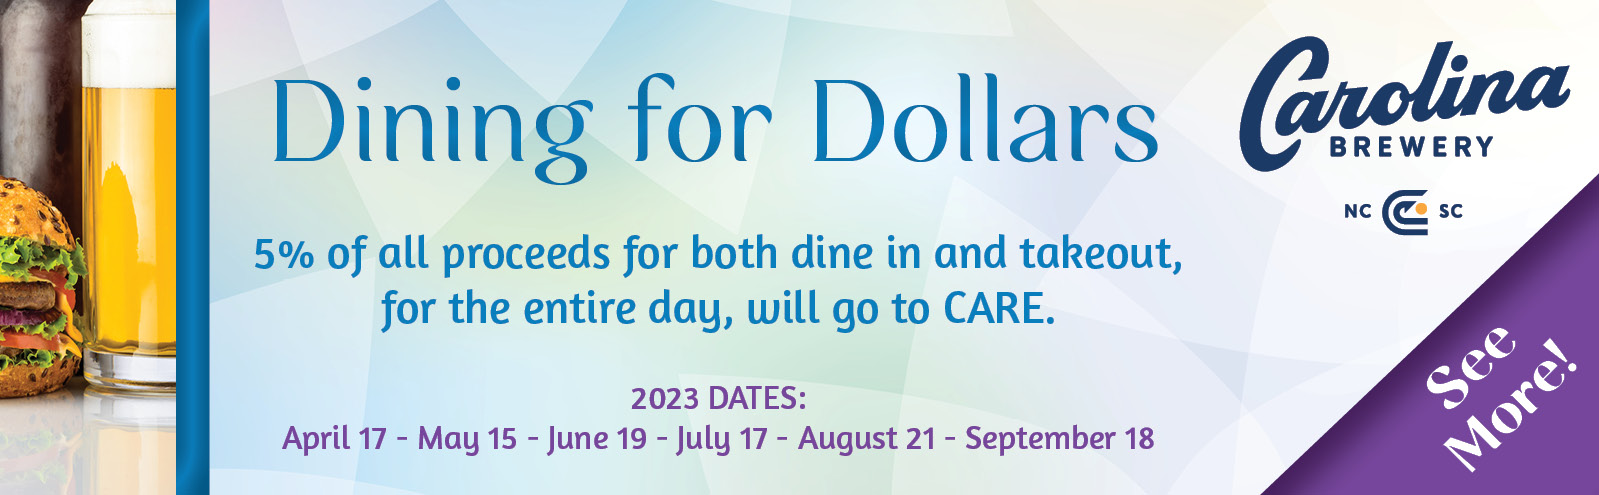 Dining for Dollars - September